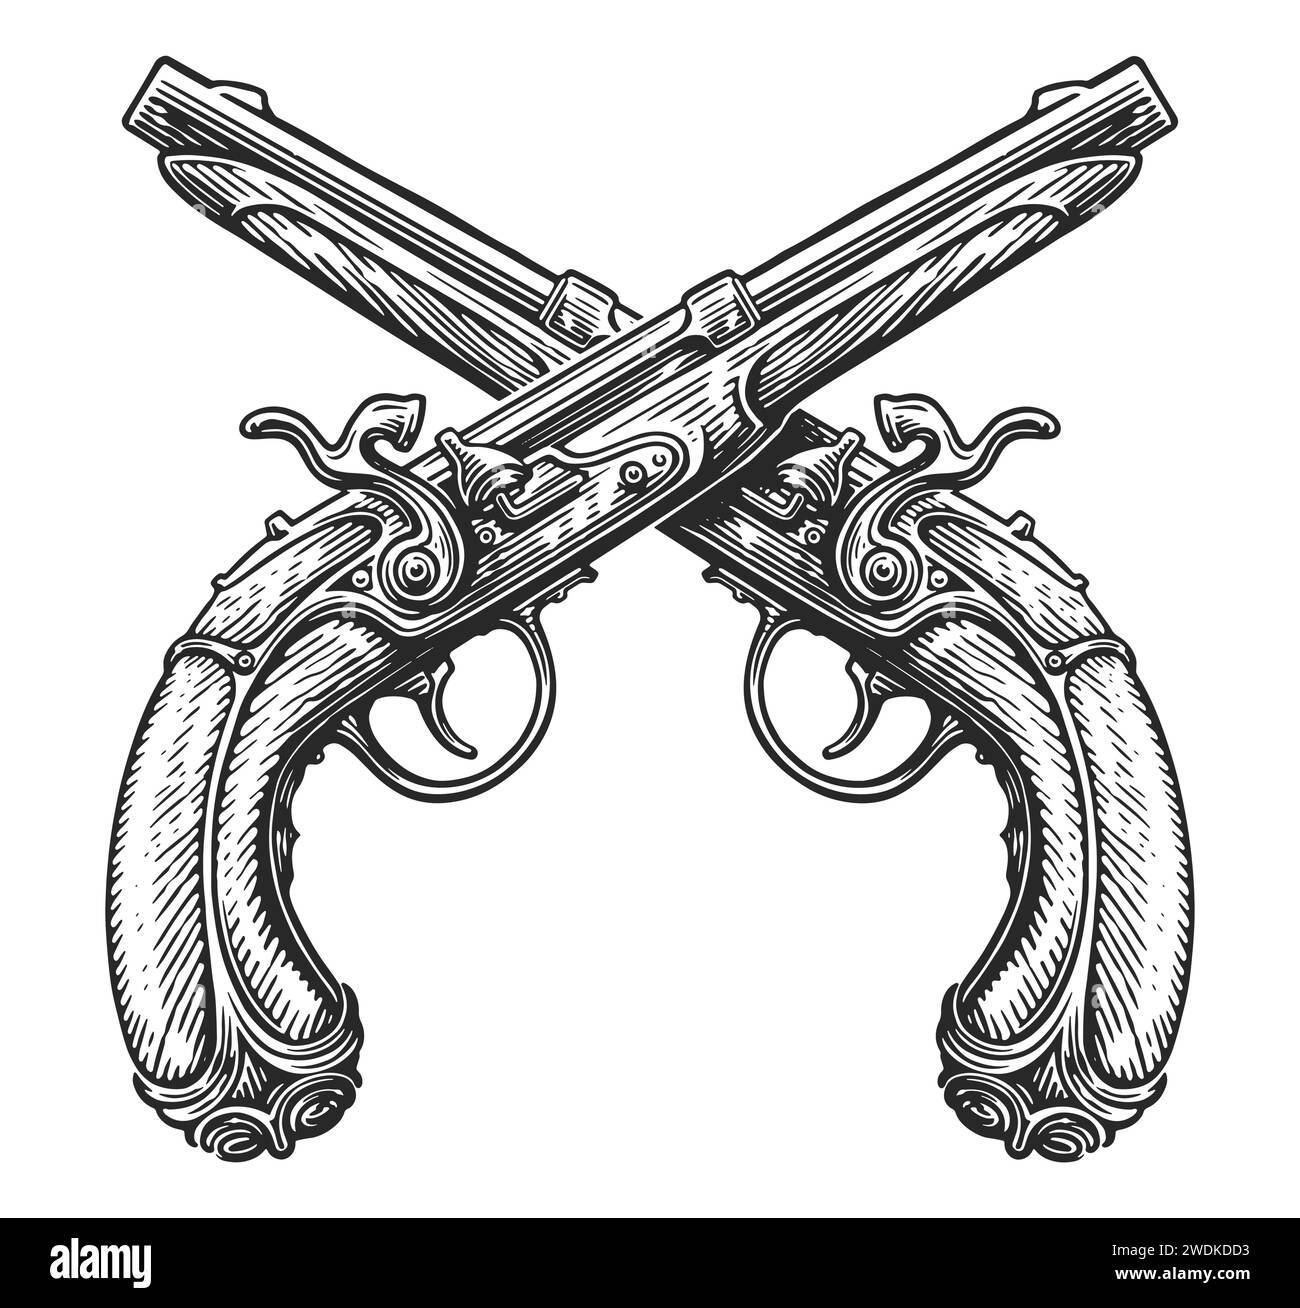 Gekreuzte Feuersteinpistolen, Skizze. Zwei Gewehre, Schusswaffen. Handgezeichnete Vintage-Vektor-Illustration Stock Vektor